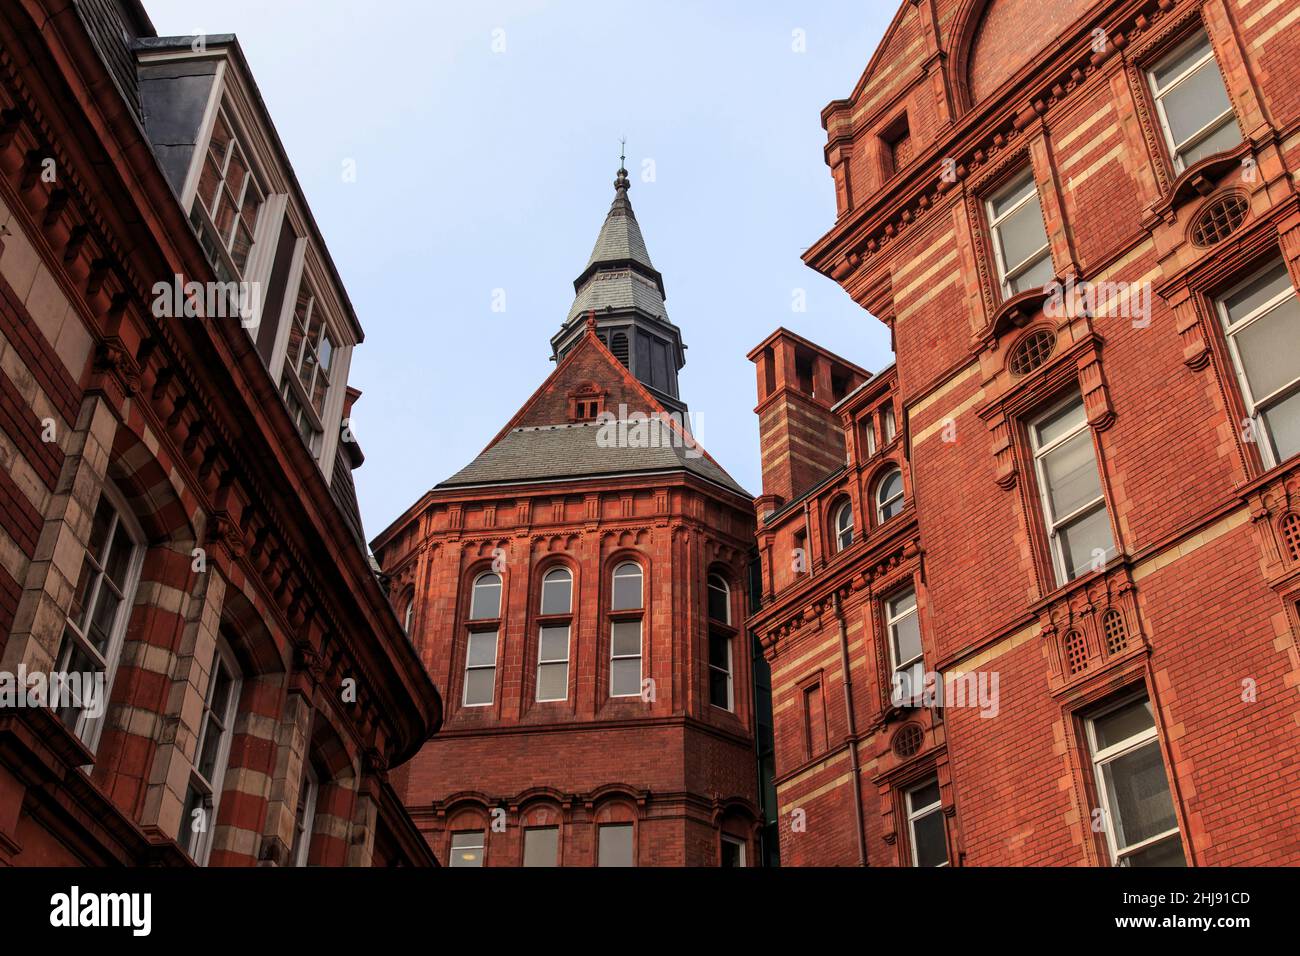 LONDON, GROSSBRITANNIEN - 18. SEPTEMBER 2014: Dies ist das Gebäude des College der University of London, das im neugotischen Stil erbaut wurde. Stockfoto